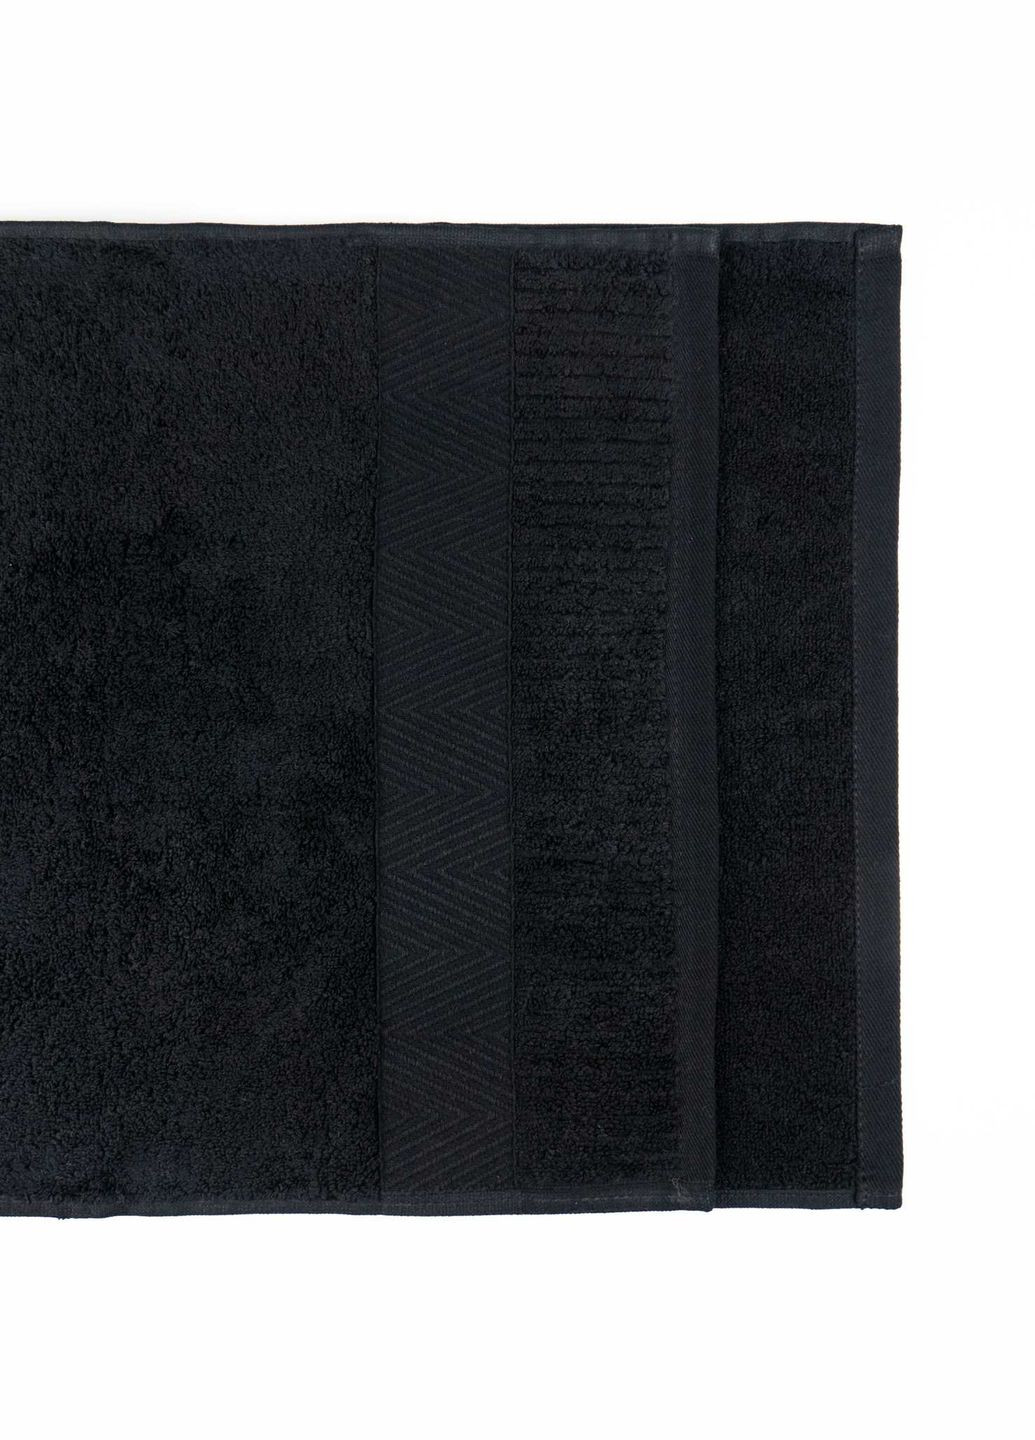 GM Textile банное махровое полотенце 70x140см премиум качества зеро твист бордюр 550г/м2 () черный производство -